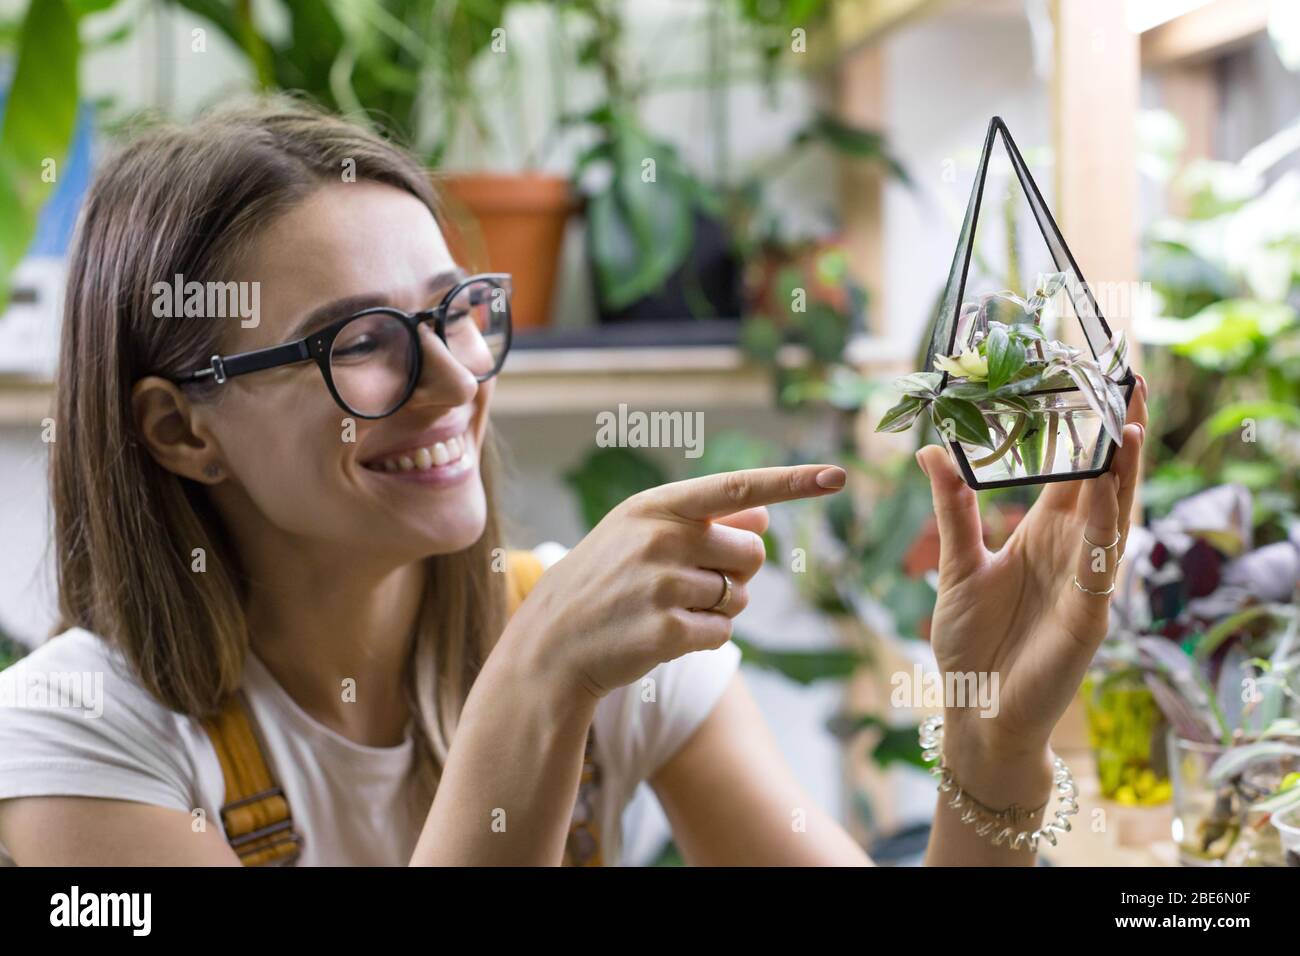 Sorridente donna giardiniere in occhiali mostra indice dito sui tagli di tradescantia in un piccolo vetro florarium per la germinazione di piante, pianta domestica in vaso Foto Stock